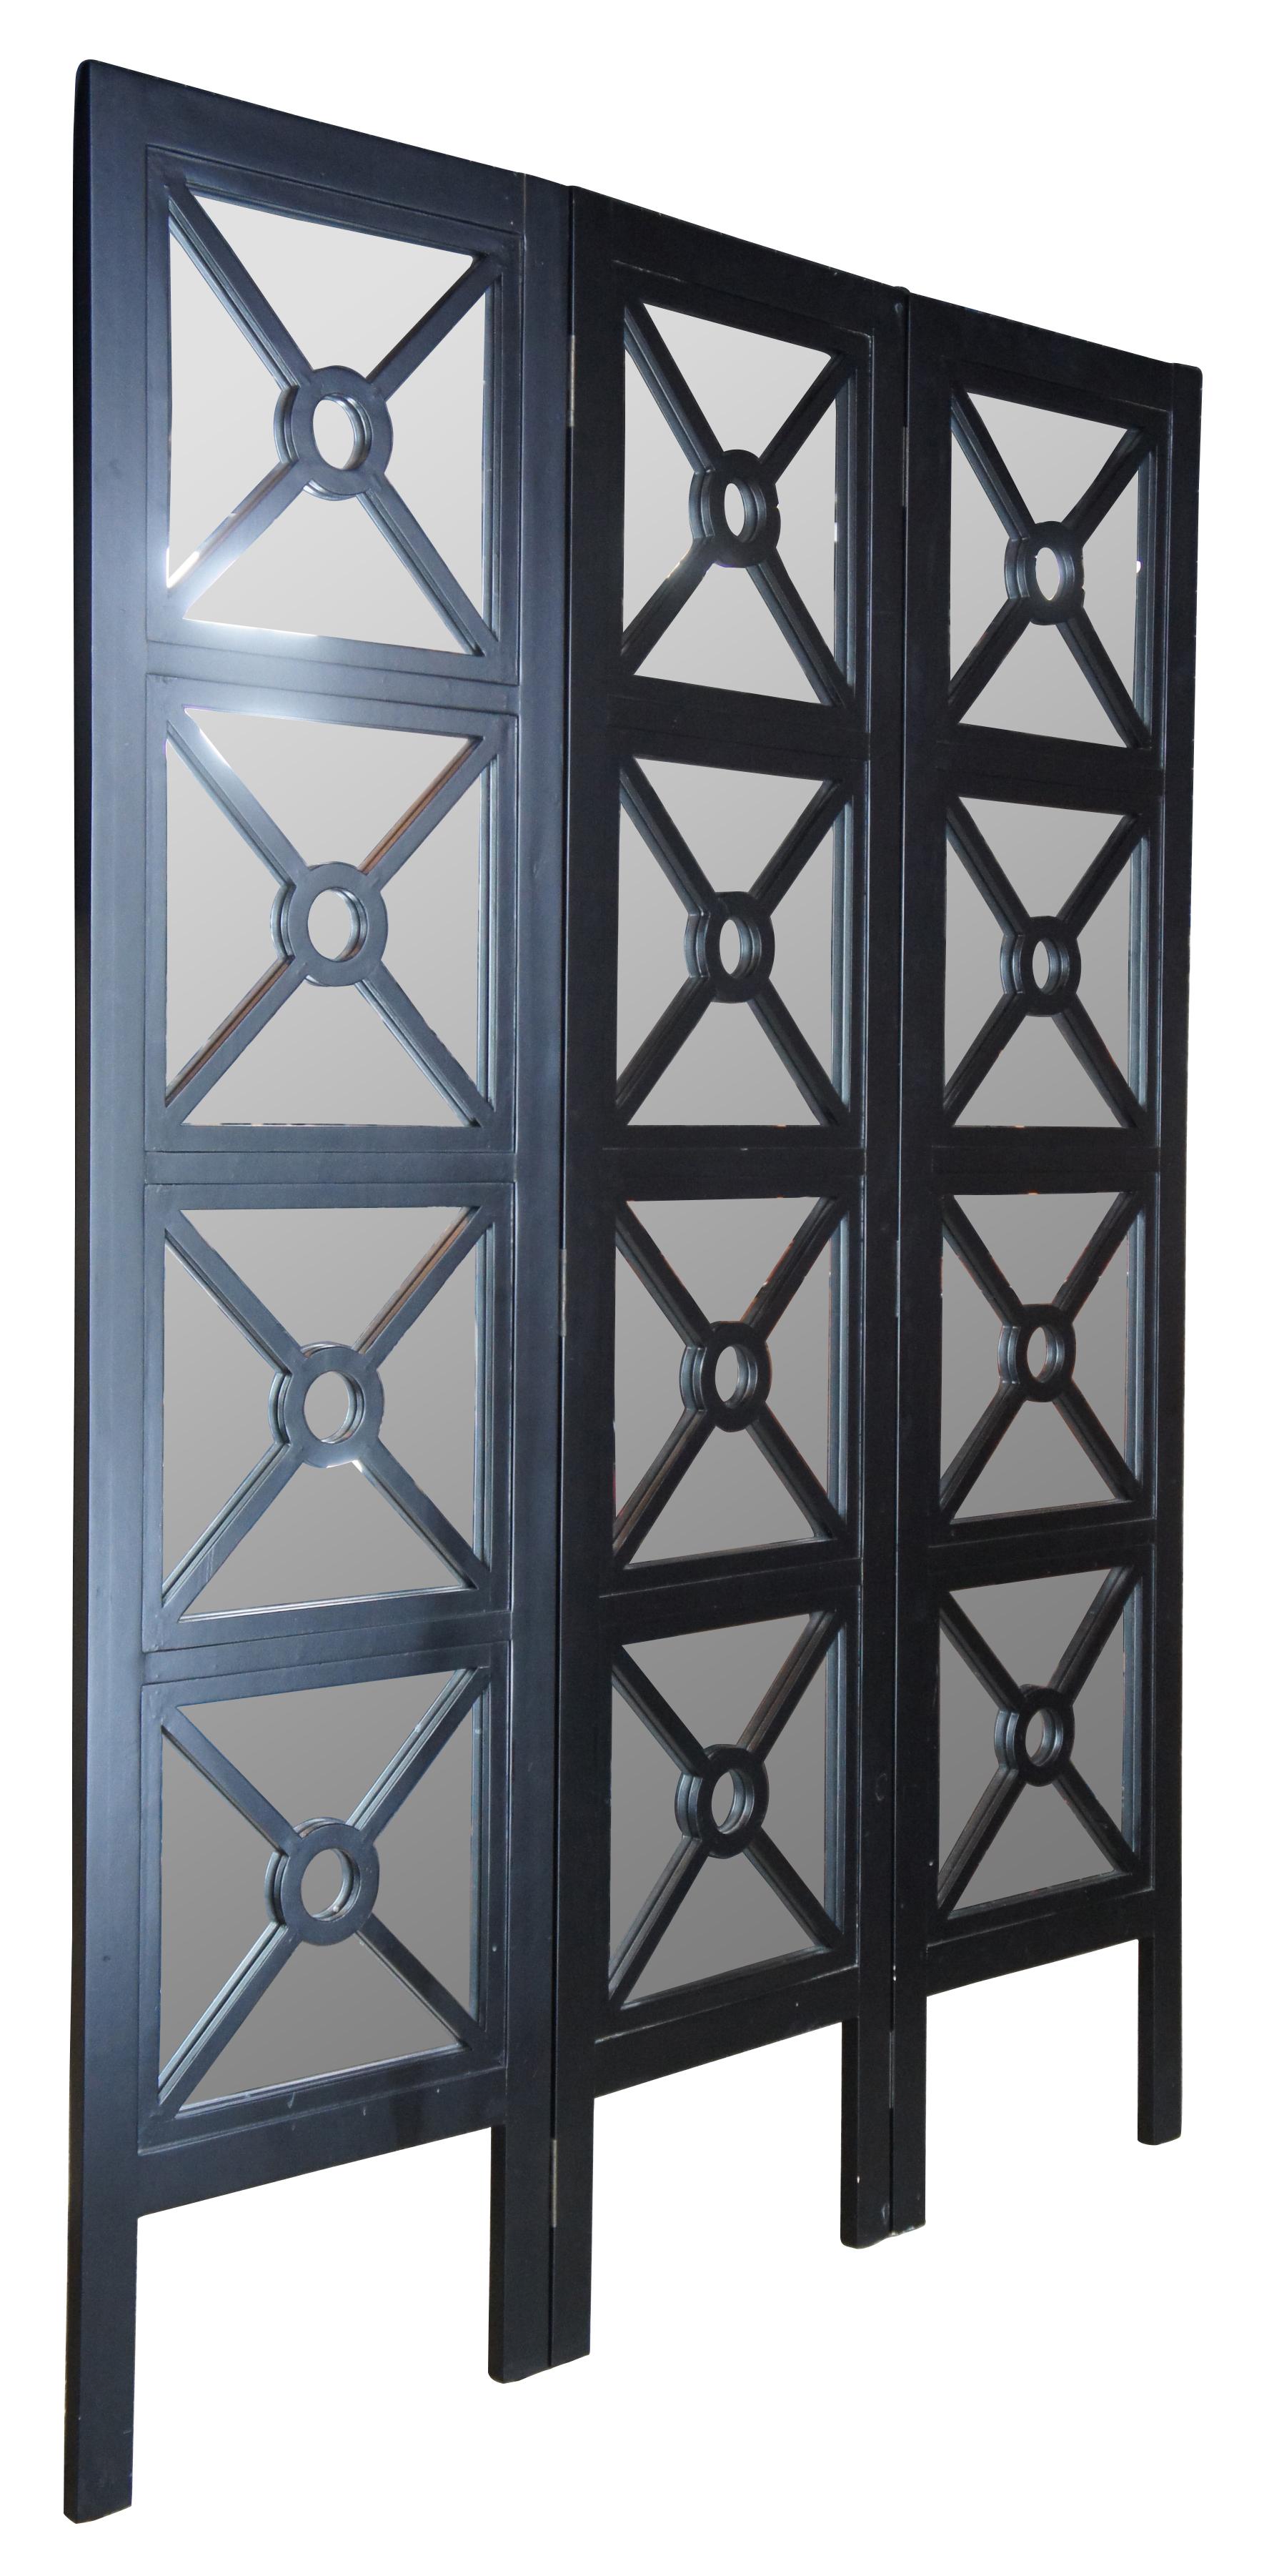 Paravento vintage a tre pannelli in stile moderno revival neoclassico. Presenta una struttura in legno nero con design geometrico a X e accenti a specchio. 

3 pannelli, 18